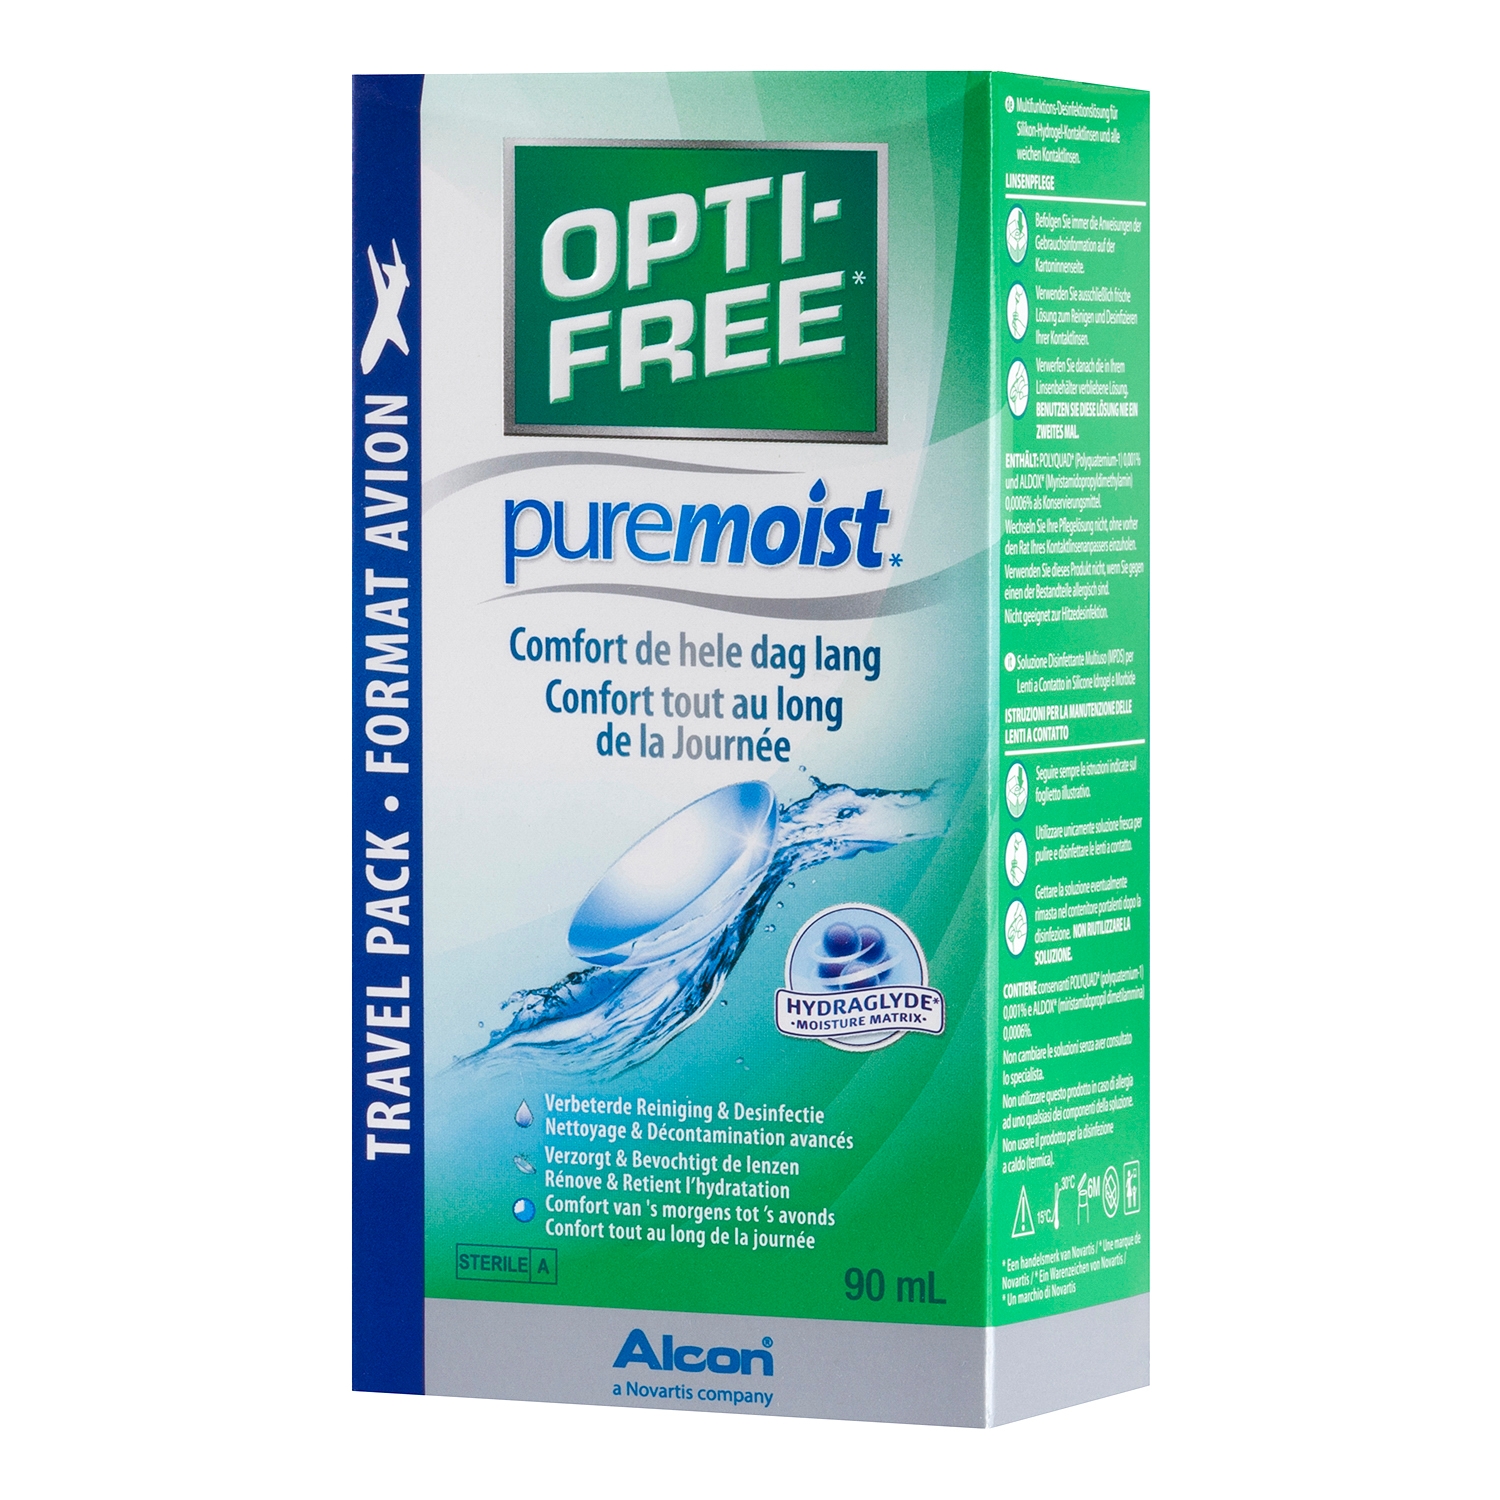 Opti-free Pure Moist 90ml